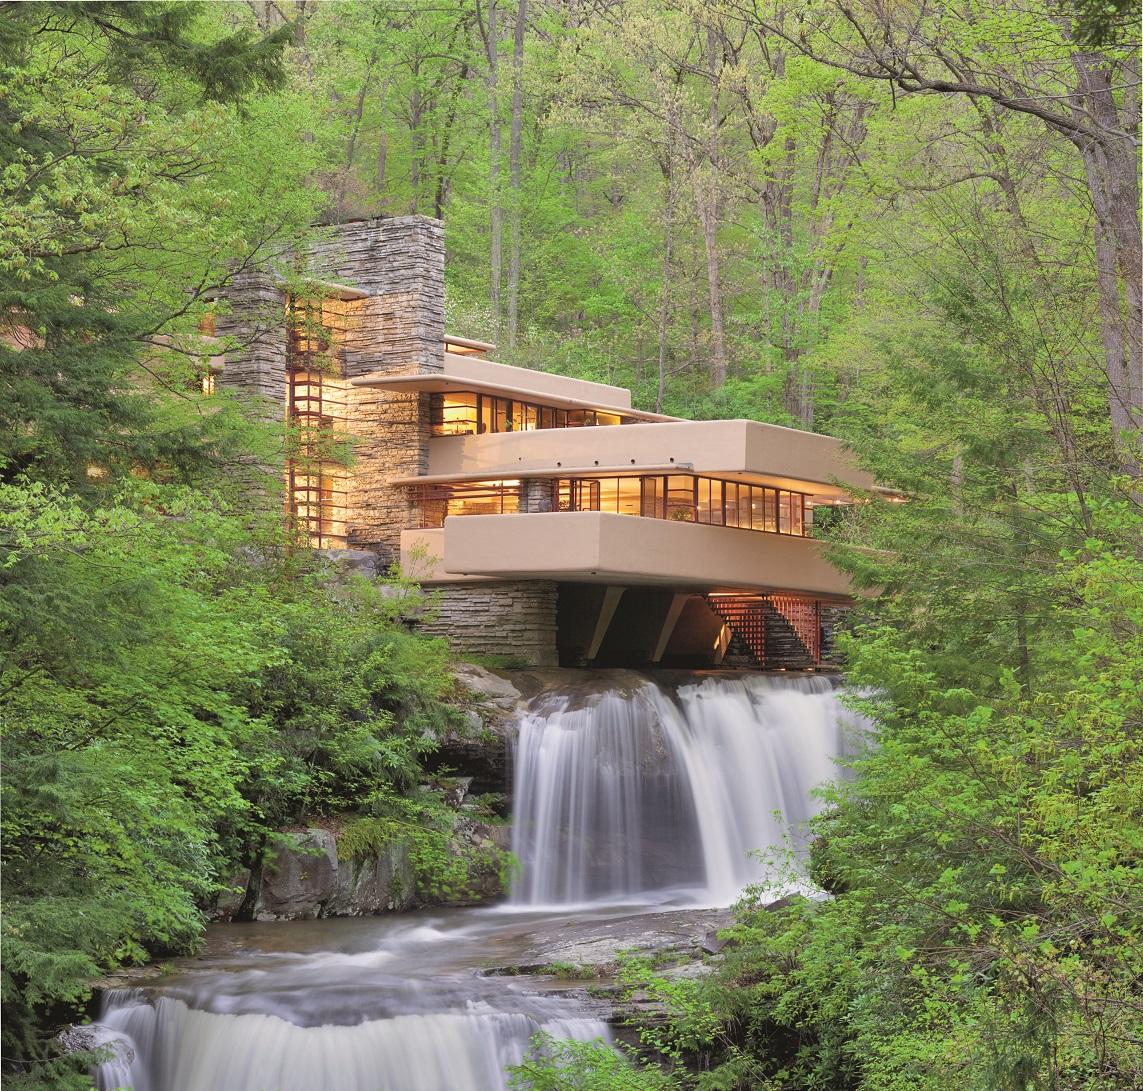 Ngôi nhà Fallingwater: Kiến trúc nổi bật ở vùng rừng hẻo lánh của Pennsylvania